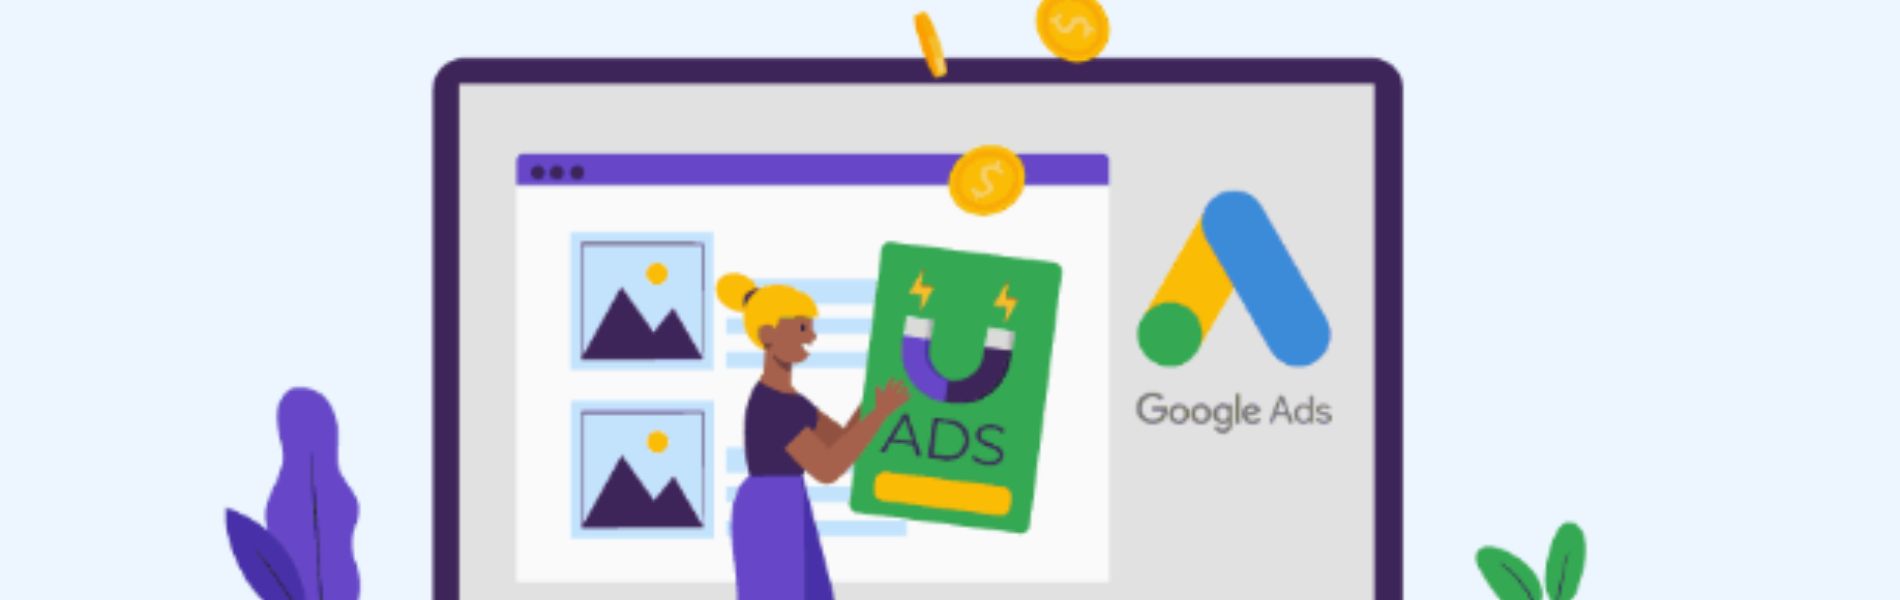 No momento você está vendo Marketing Digital com o Google Ads